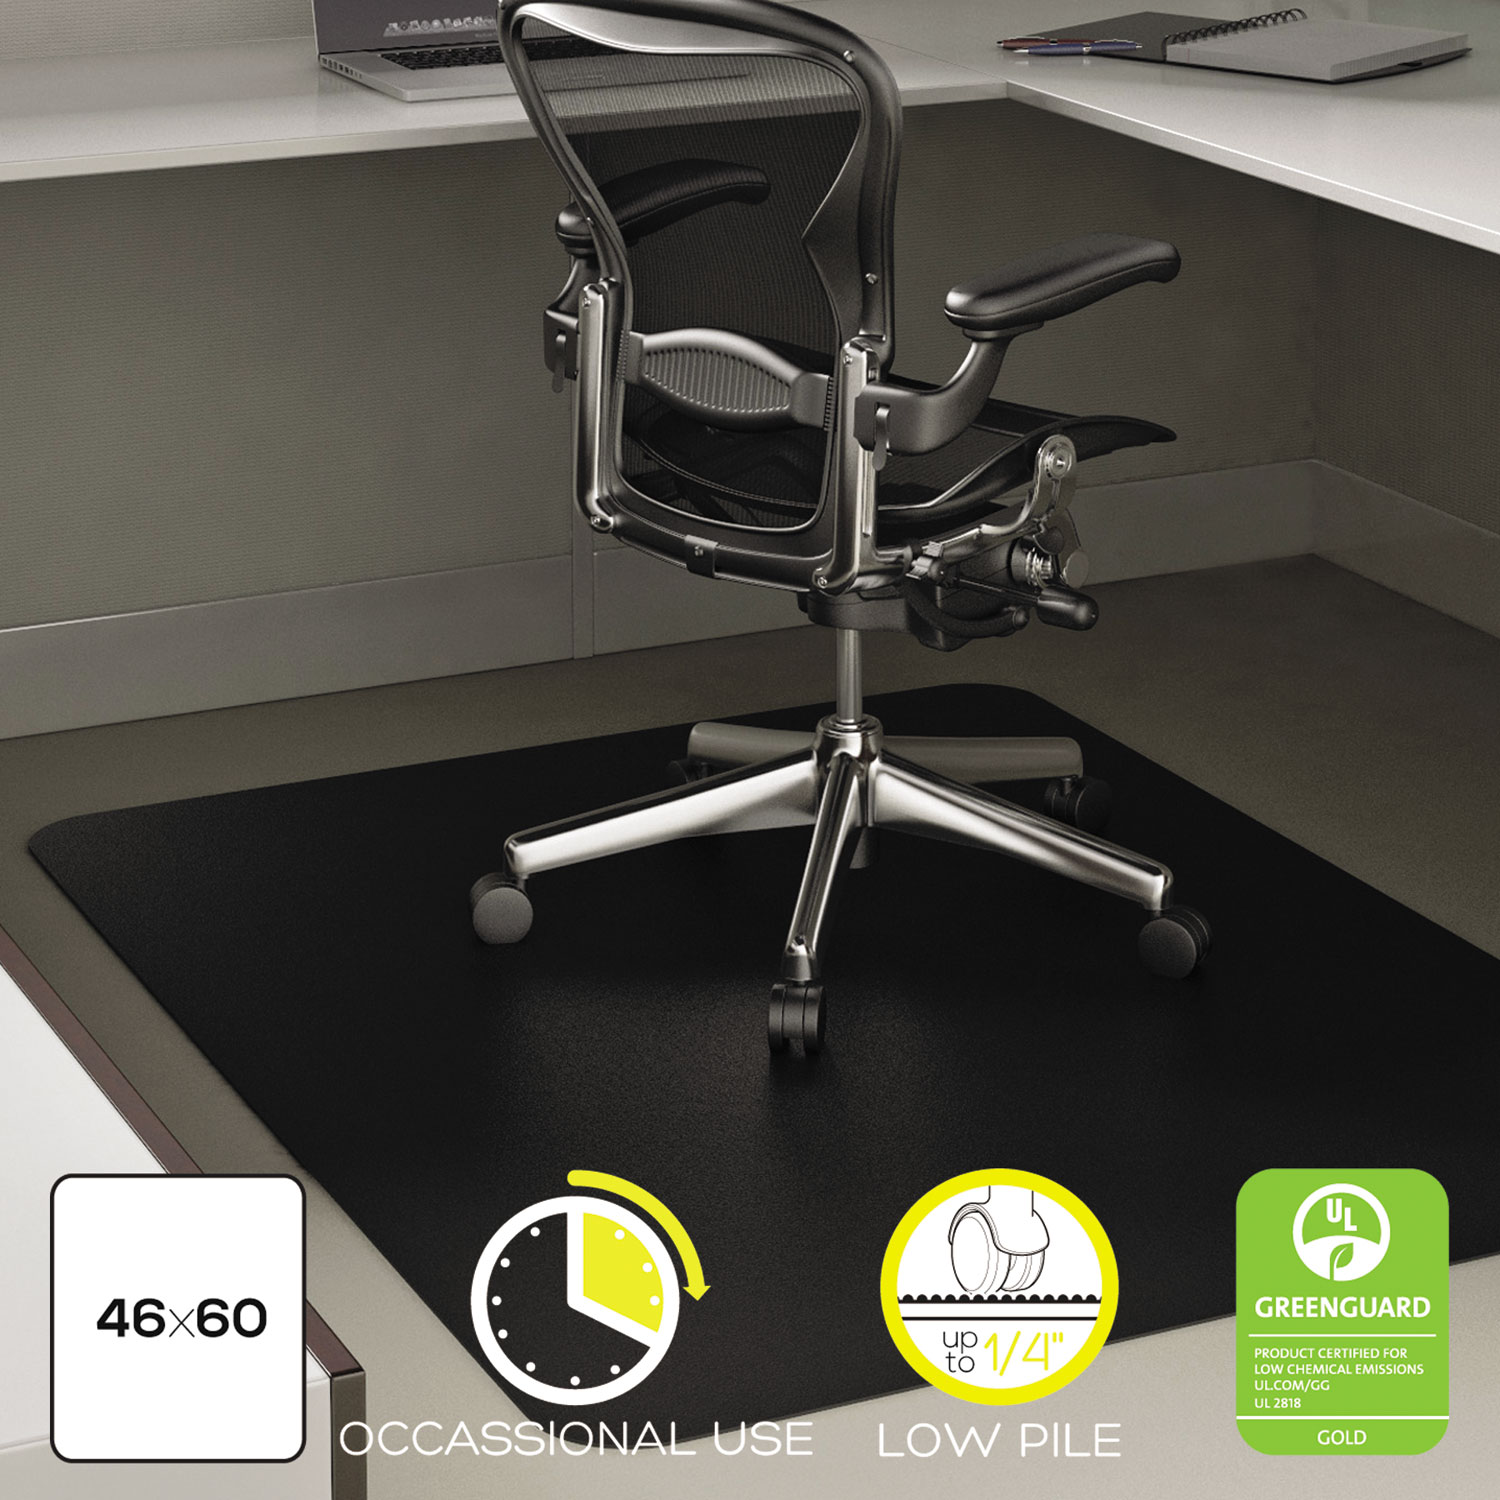  deflecto CM11442FBLK EconoMat Occasional Use Chair Mat for Low Pile Carpet, 46 x 60, Rectangular, Black (DEFCM11442FBLK) 